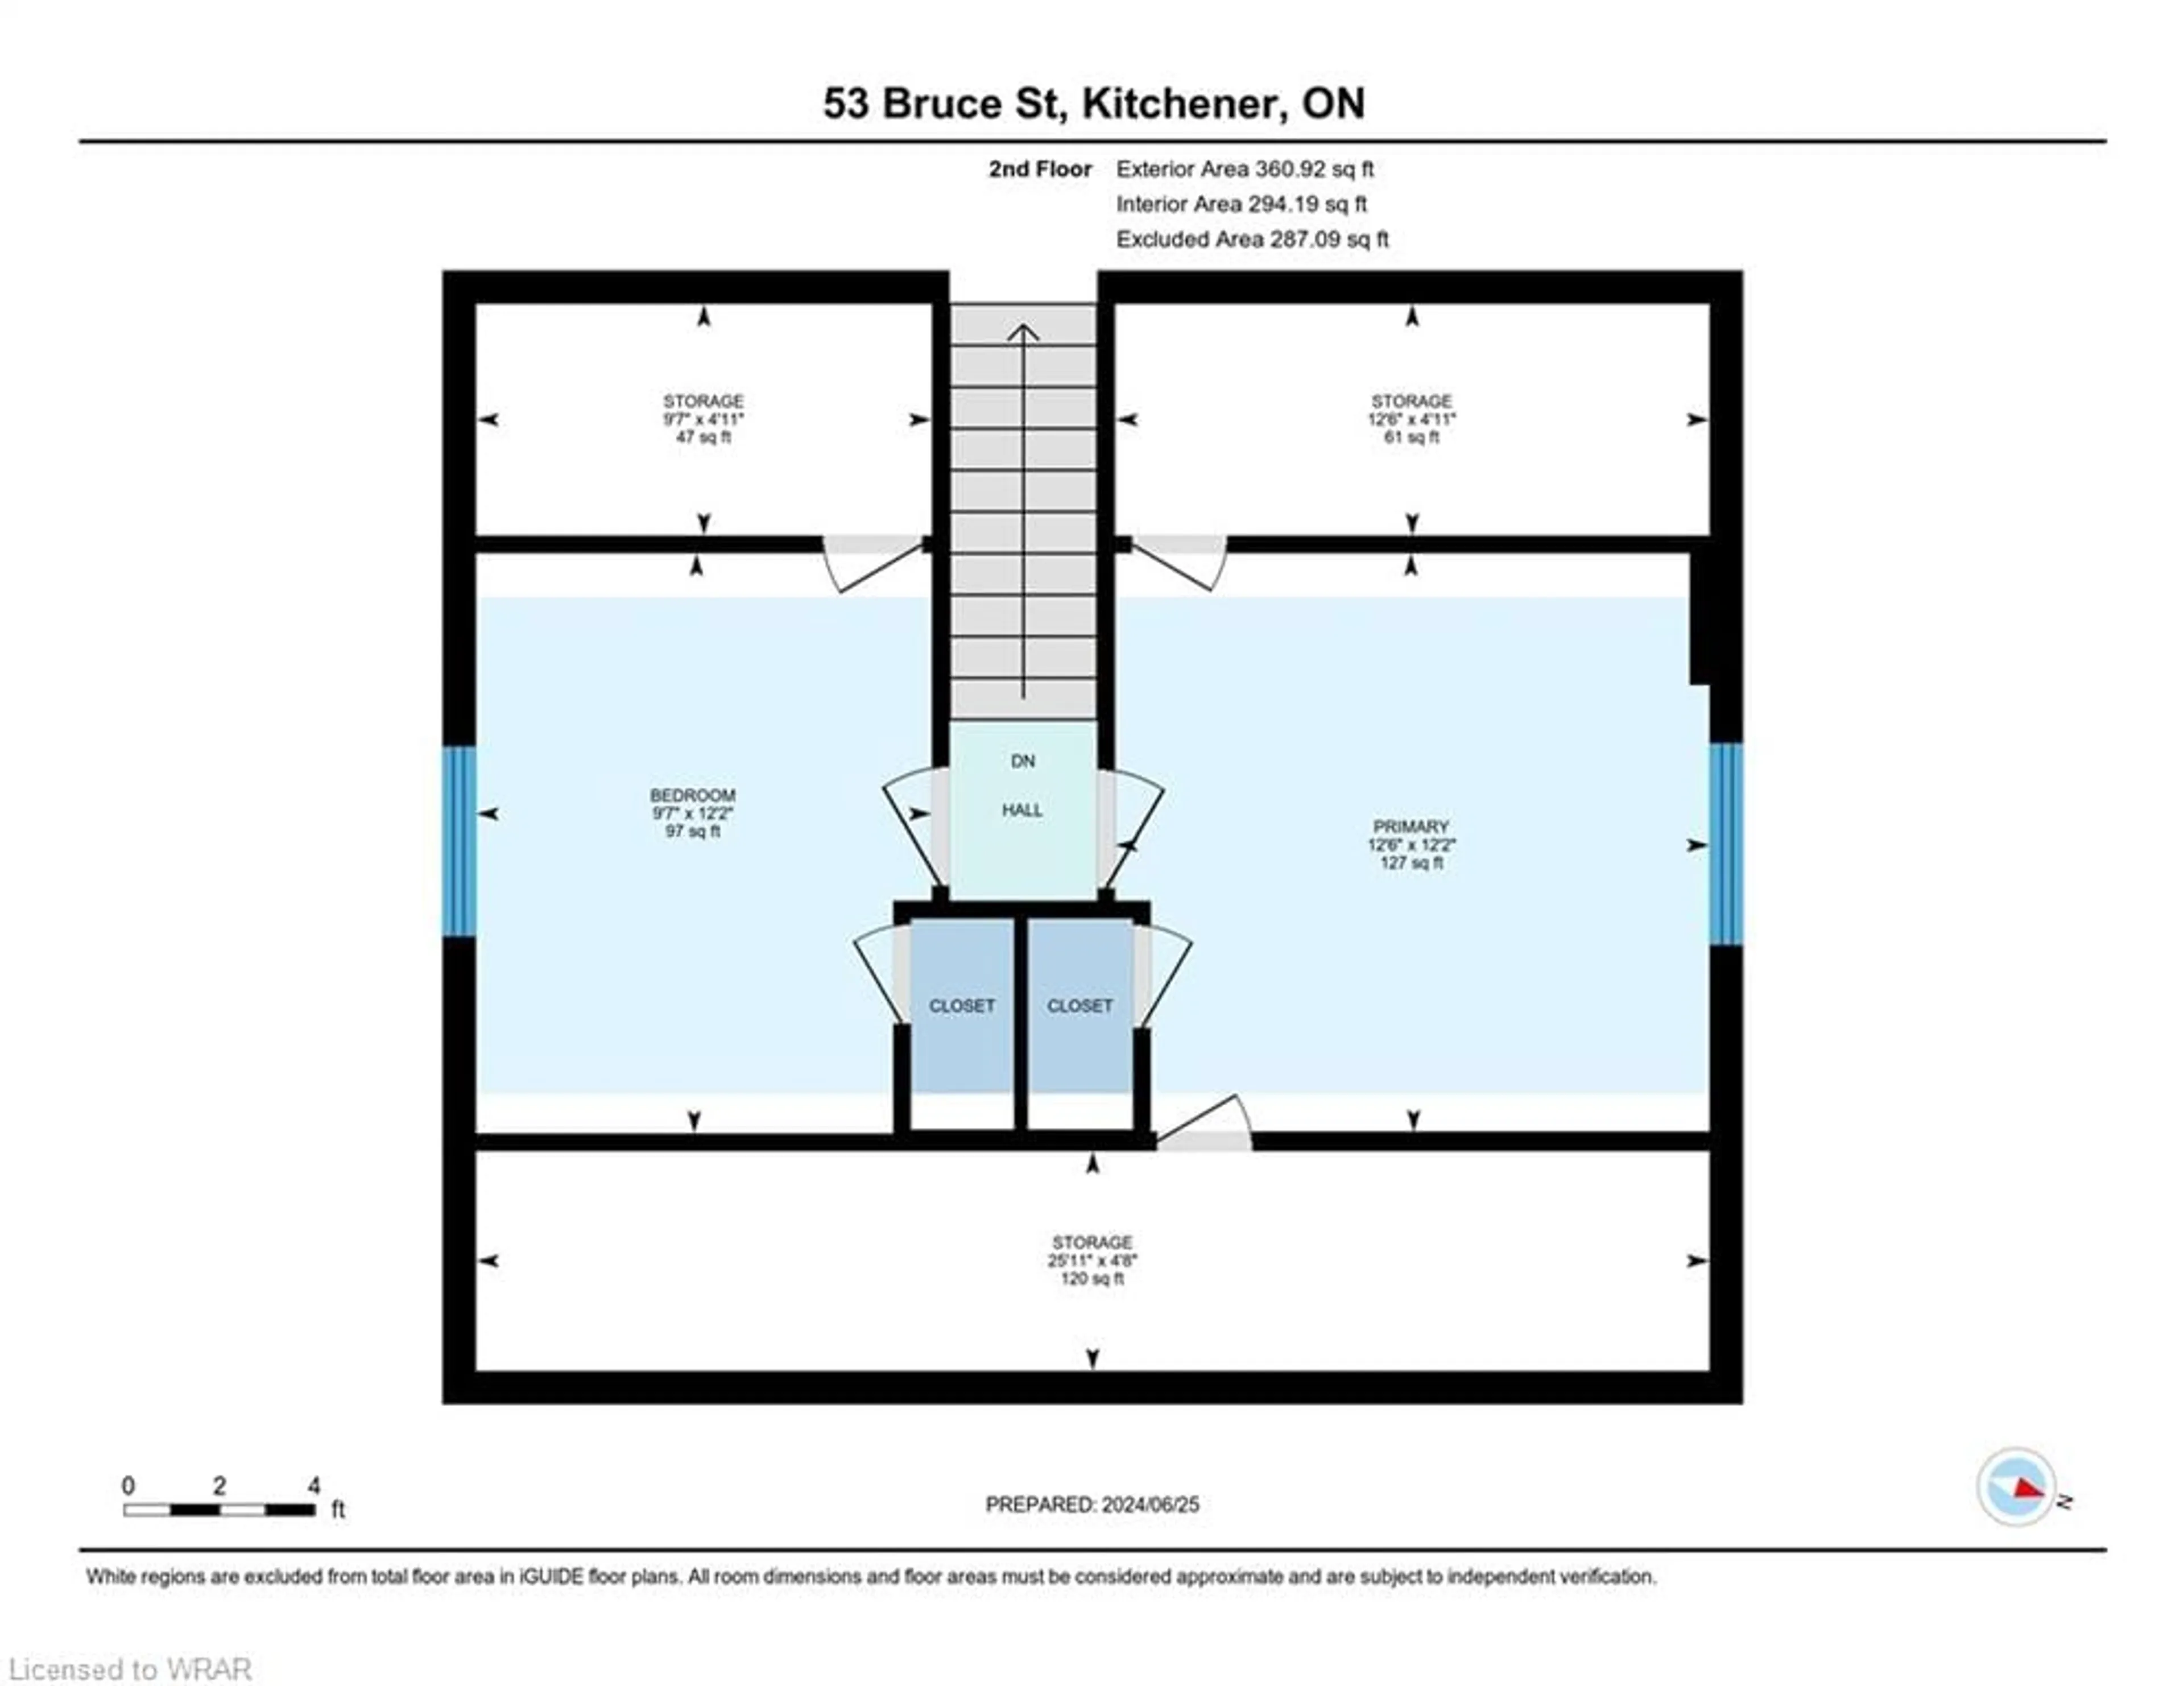 Floor plan for 53 Bruce St, Kitchener Ontario N2B 1Y6